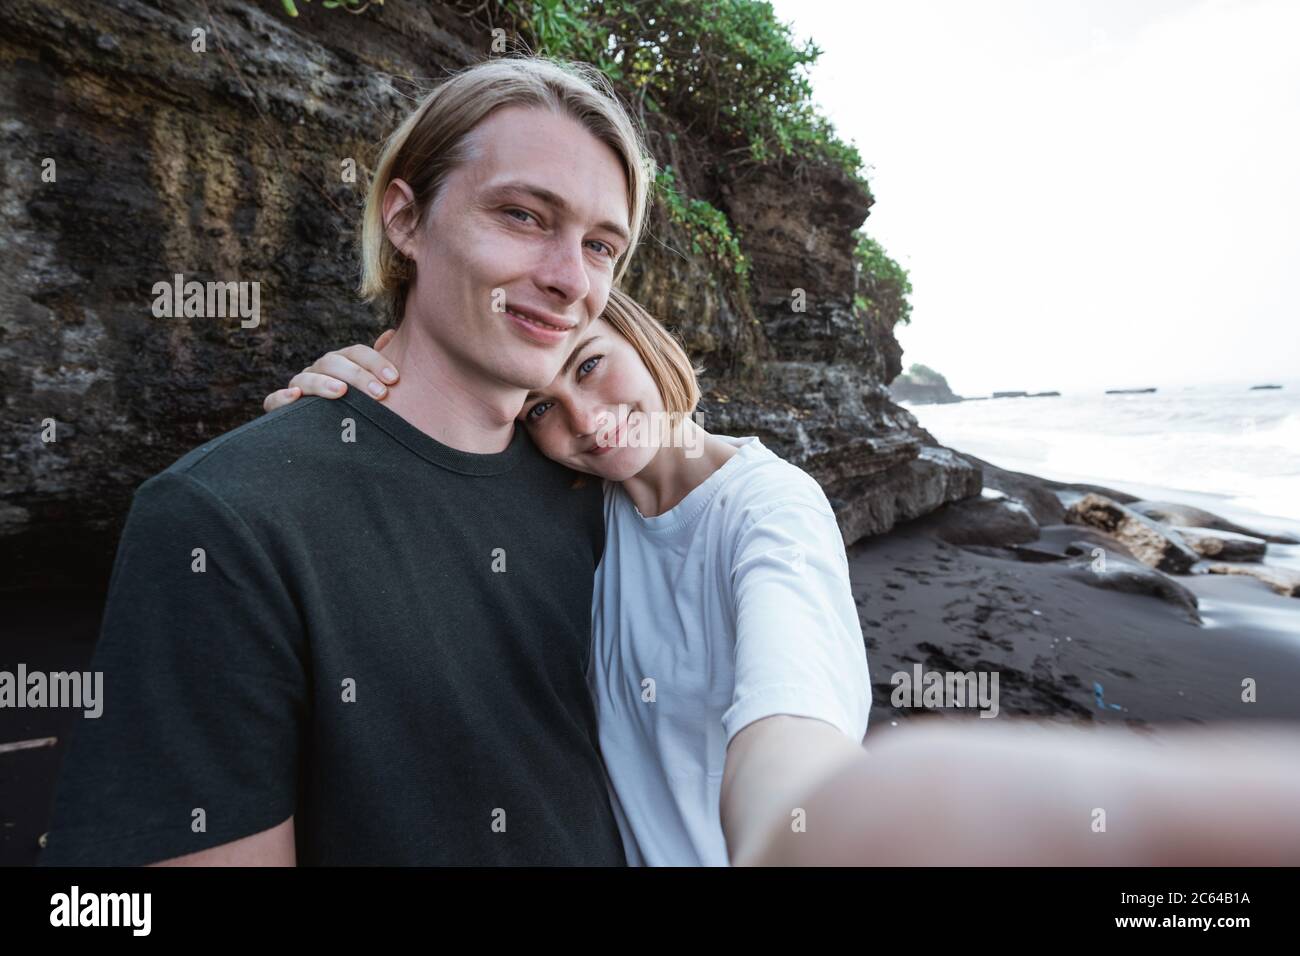 Junges Paar genießen einen gemeinsamen Ausflug am Strand gemeinsam ein Foto machen Stockfoto